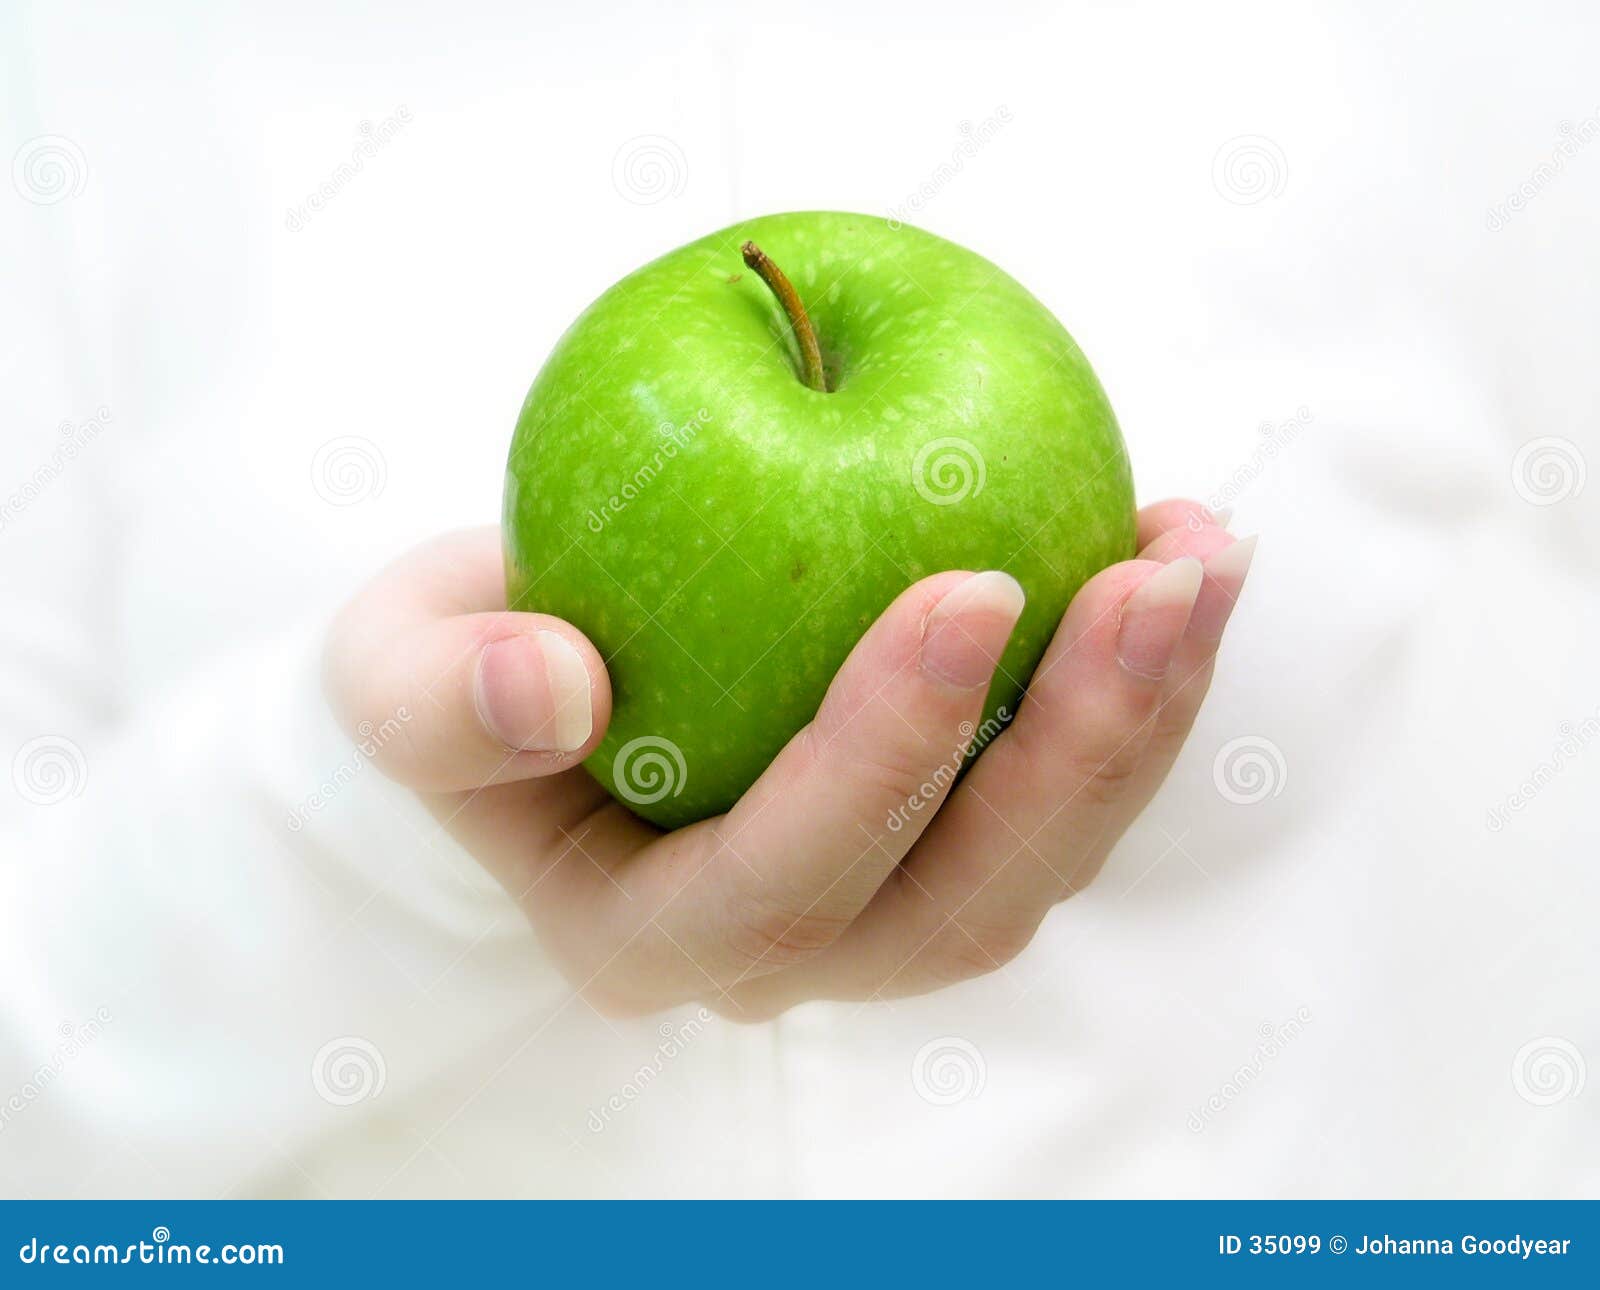 Кинуть яблоко. Яблоко в руке. Девушка держит яблоко в руке. Яблоки зеленые. Девушка с яблоком на ладони.